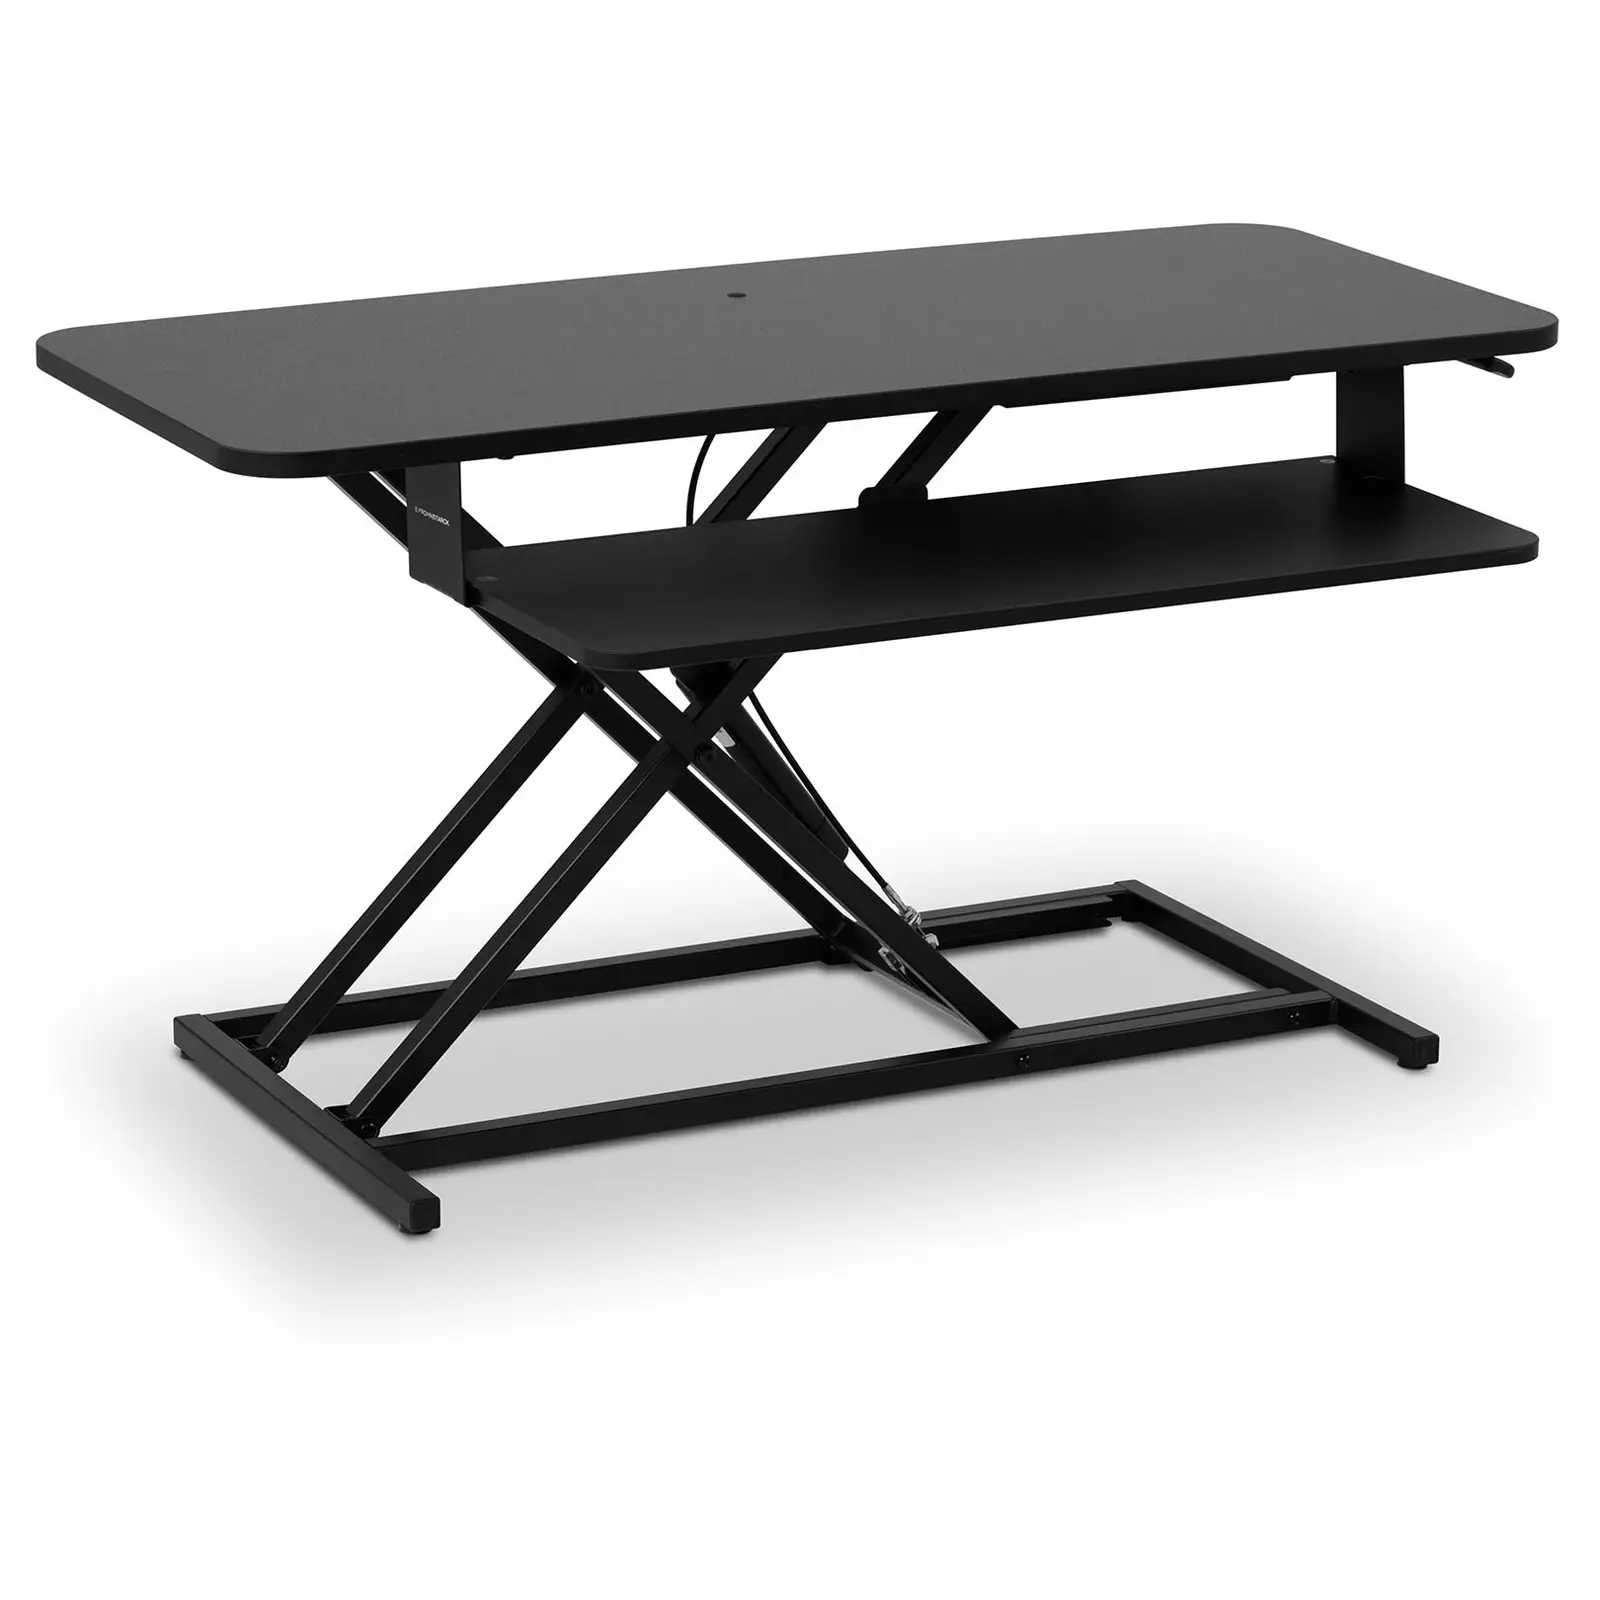 Sitt/stå skrivbordsställning - Höjdjusterbar 115-500 mm